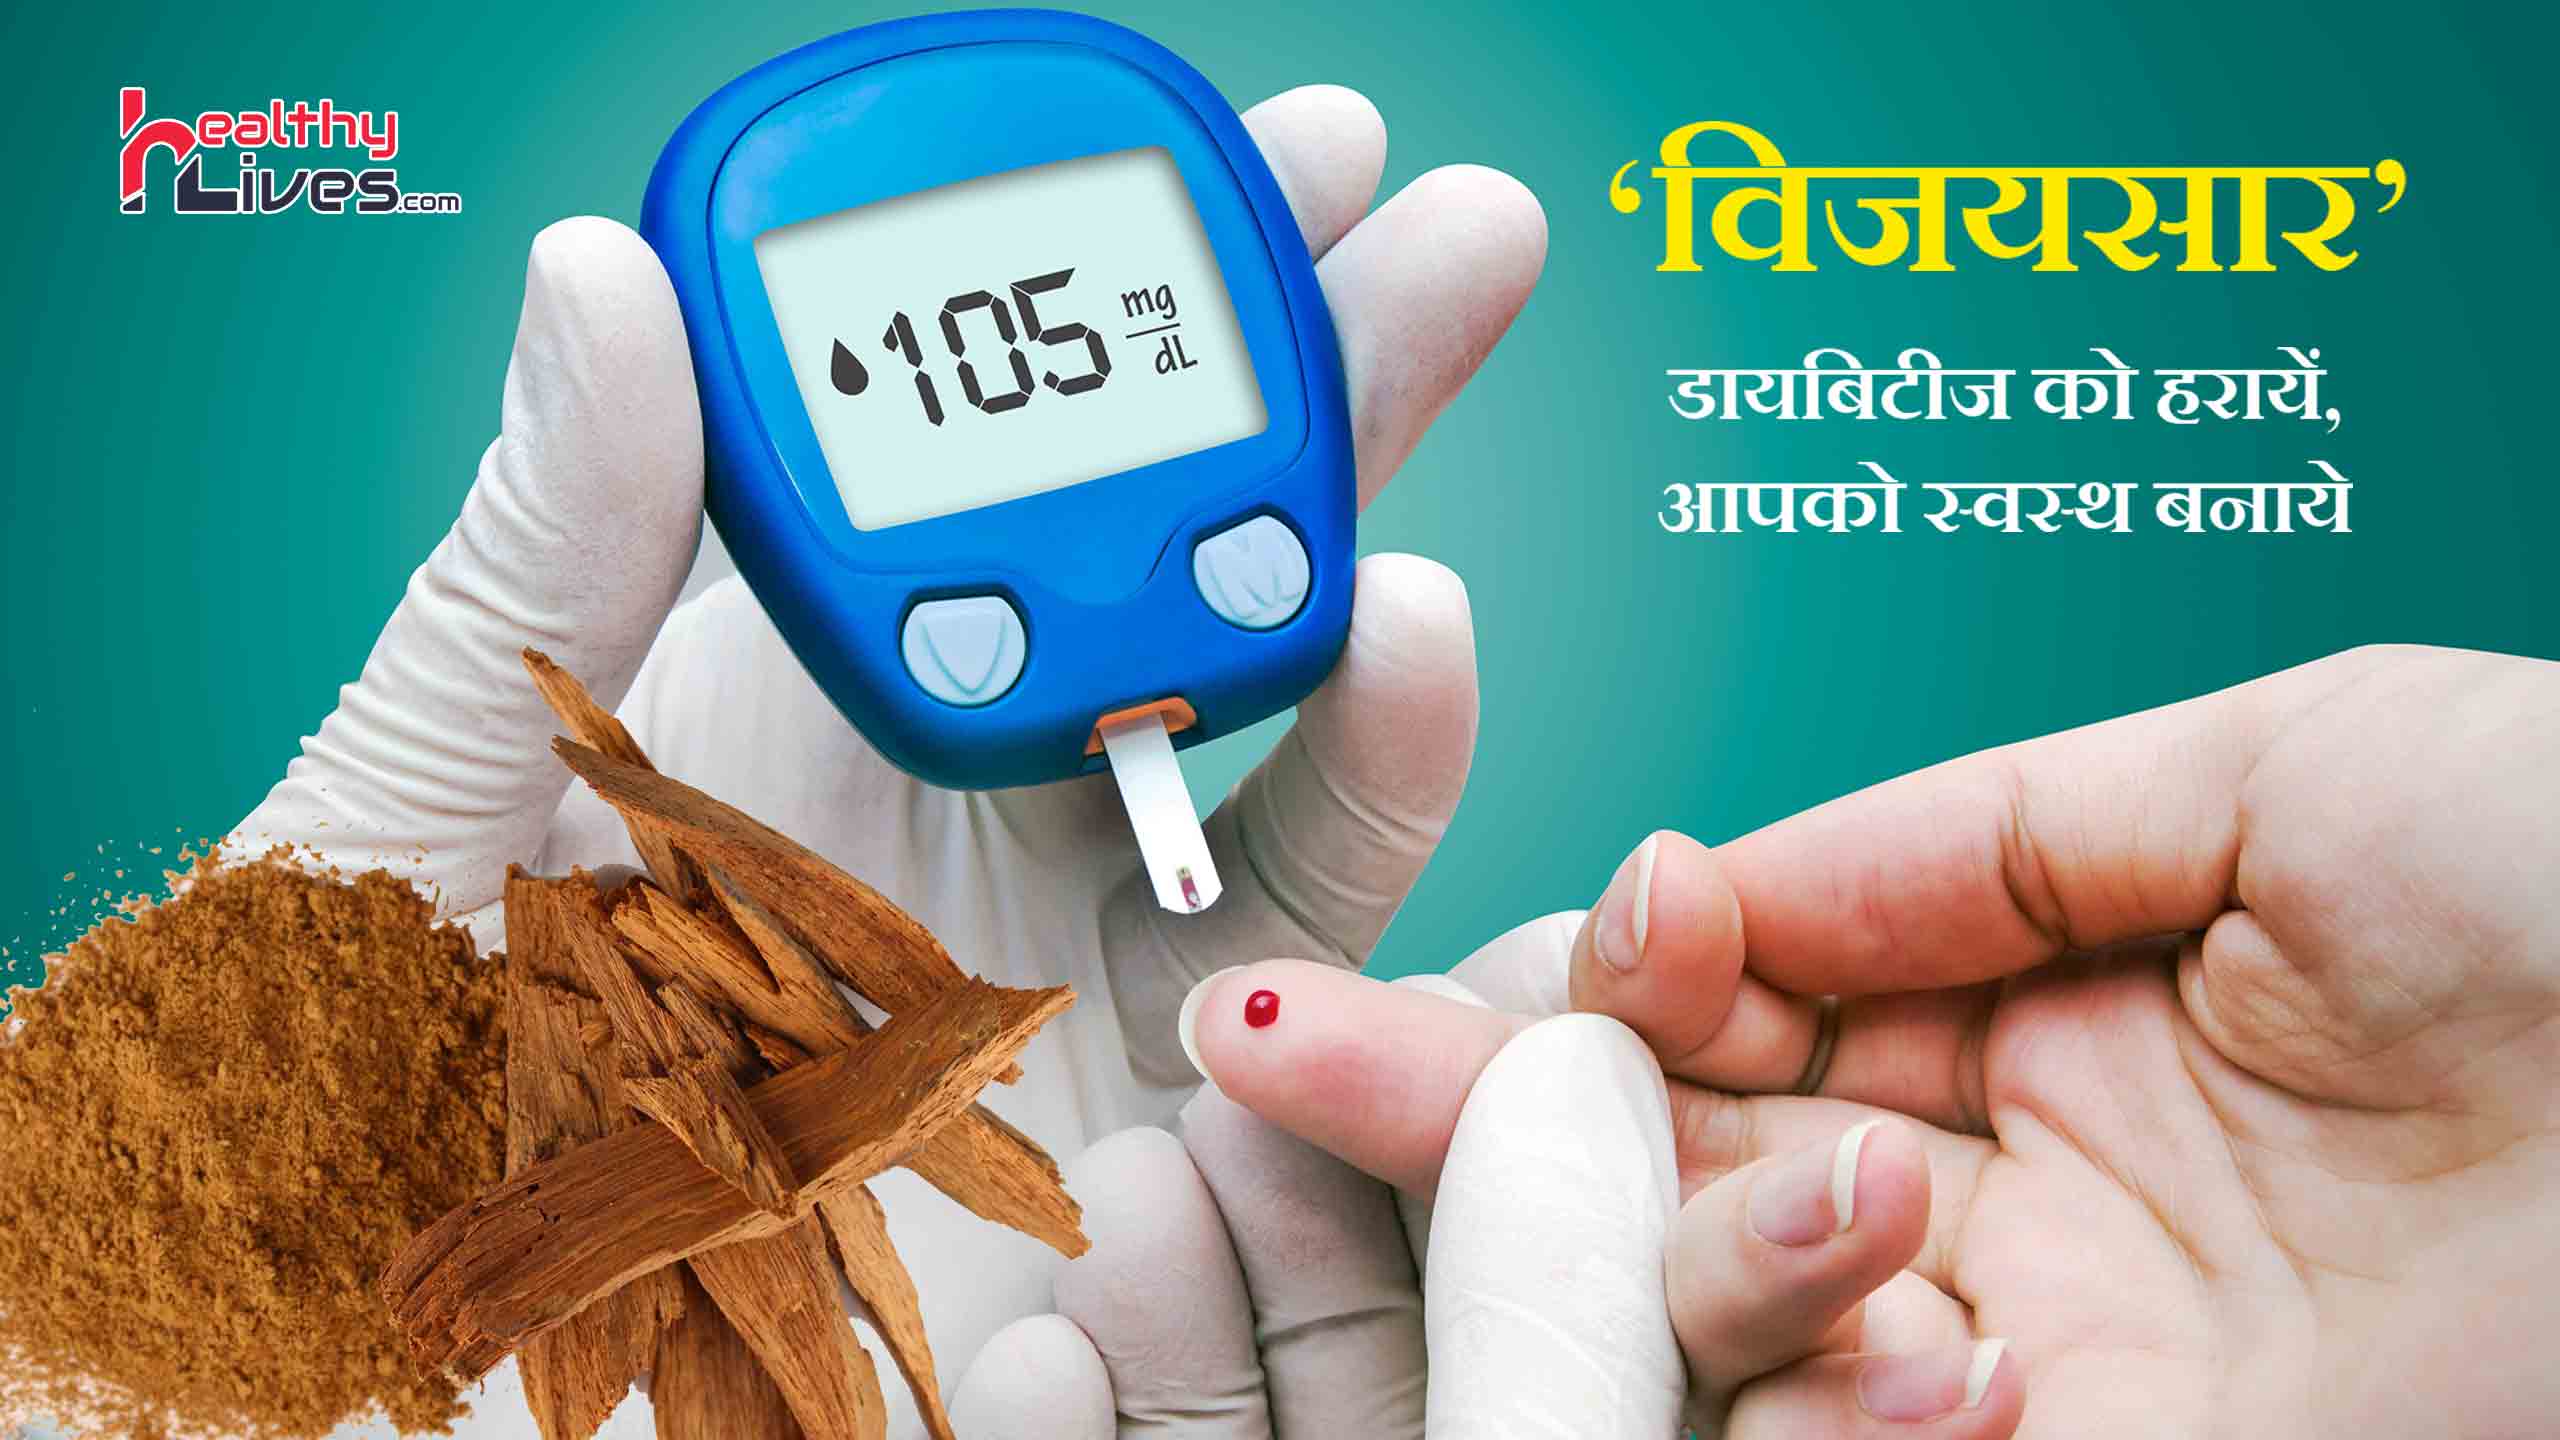 Vijaysar Wood for Diabetes: मधुमेह को दूर करने का उत्तम उपाय